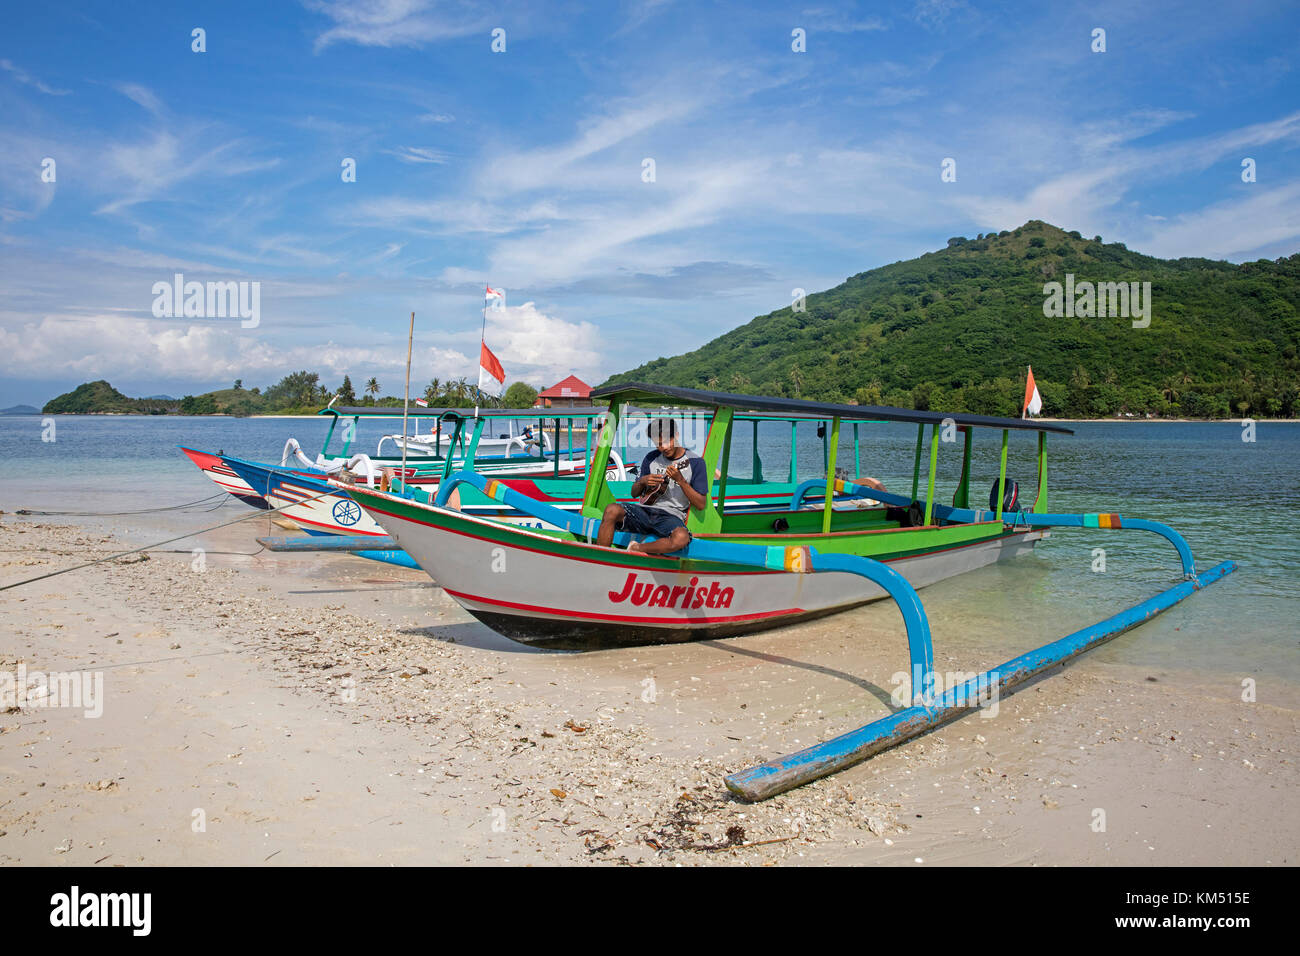 Indonesische Reiseführer spielen Ukulele auf auslegerboot auf der kleinen Insel Gili Nanggu, Gili Inseln, Insel Lombok, Kleine Sunda-Inseln, Indonesien Stockfoto